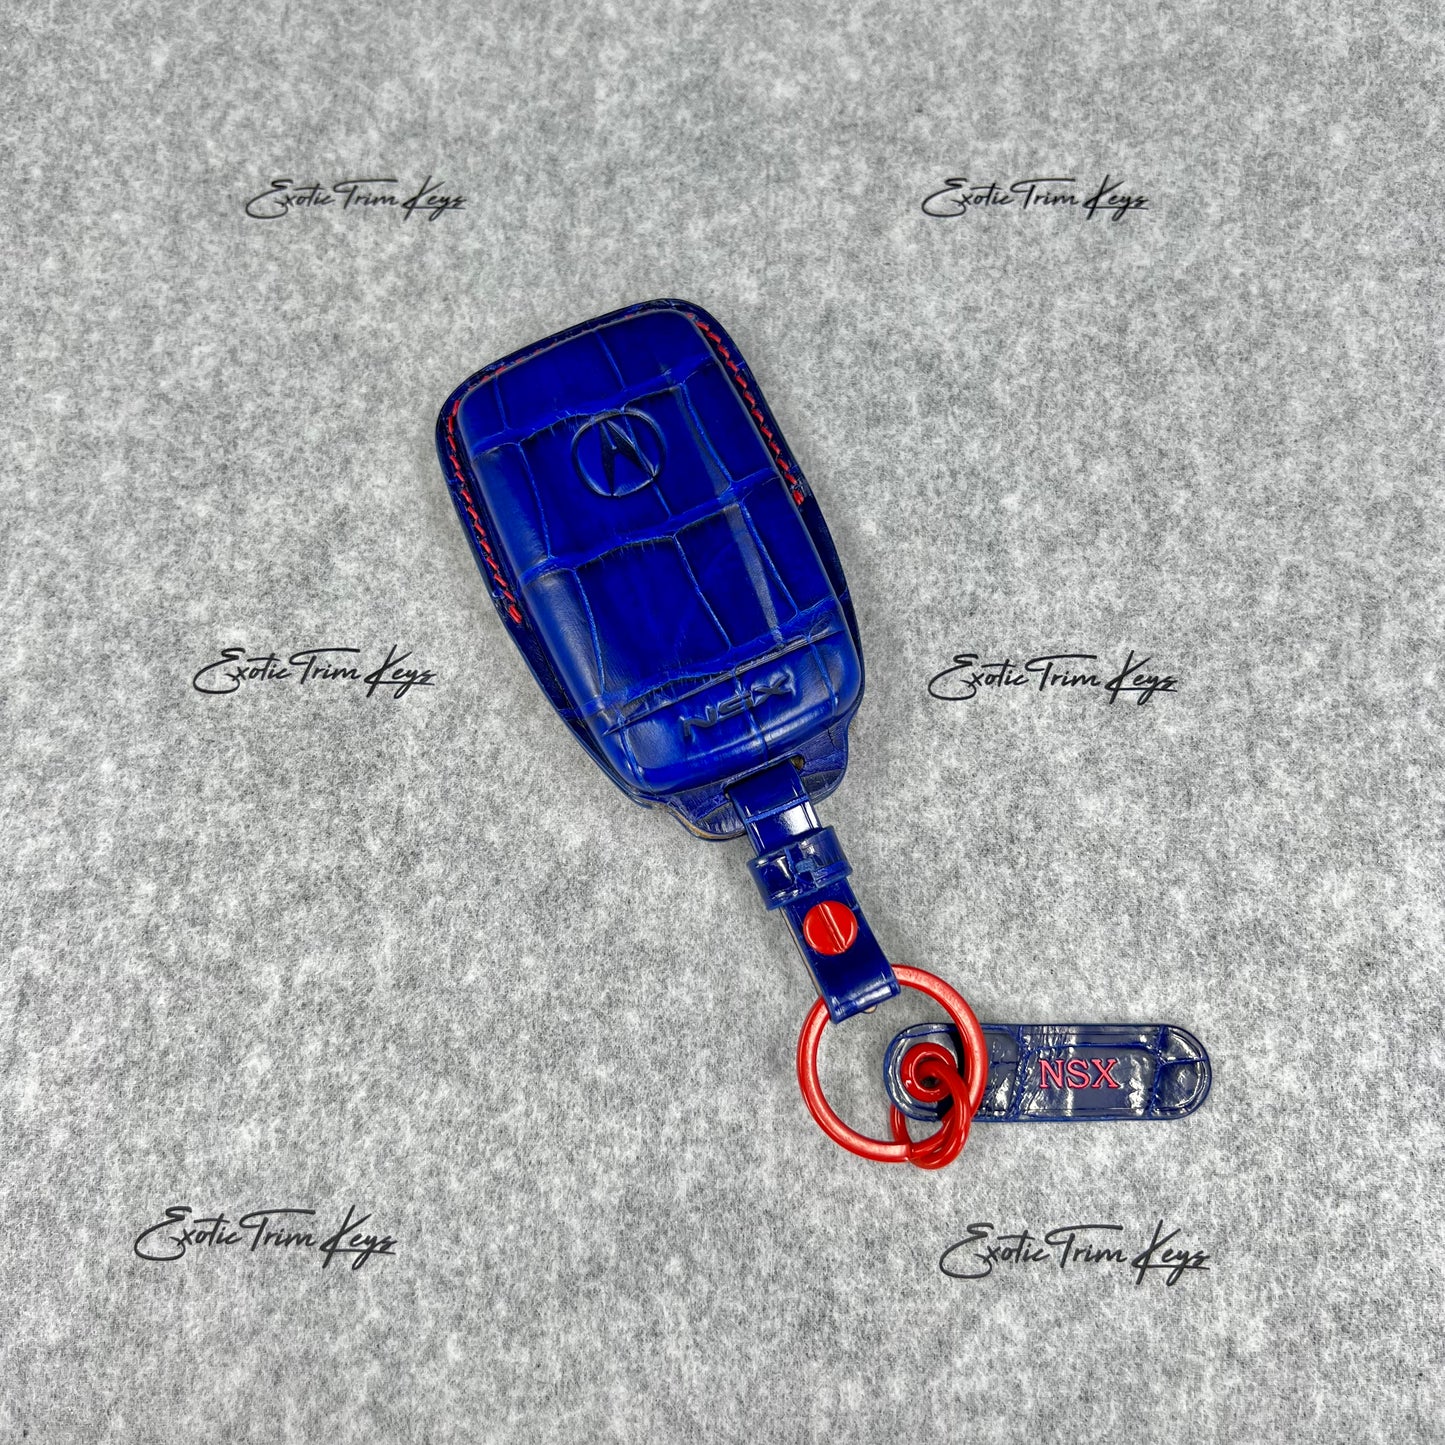 غطاء مفتاح Acura NSX - جلد التمساح باللونين الأزرق والأحمر / خياطة حمراء - متوفر في المخزون